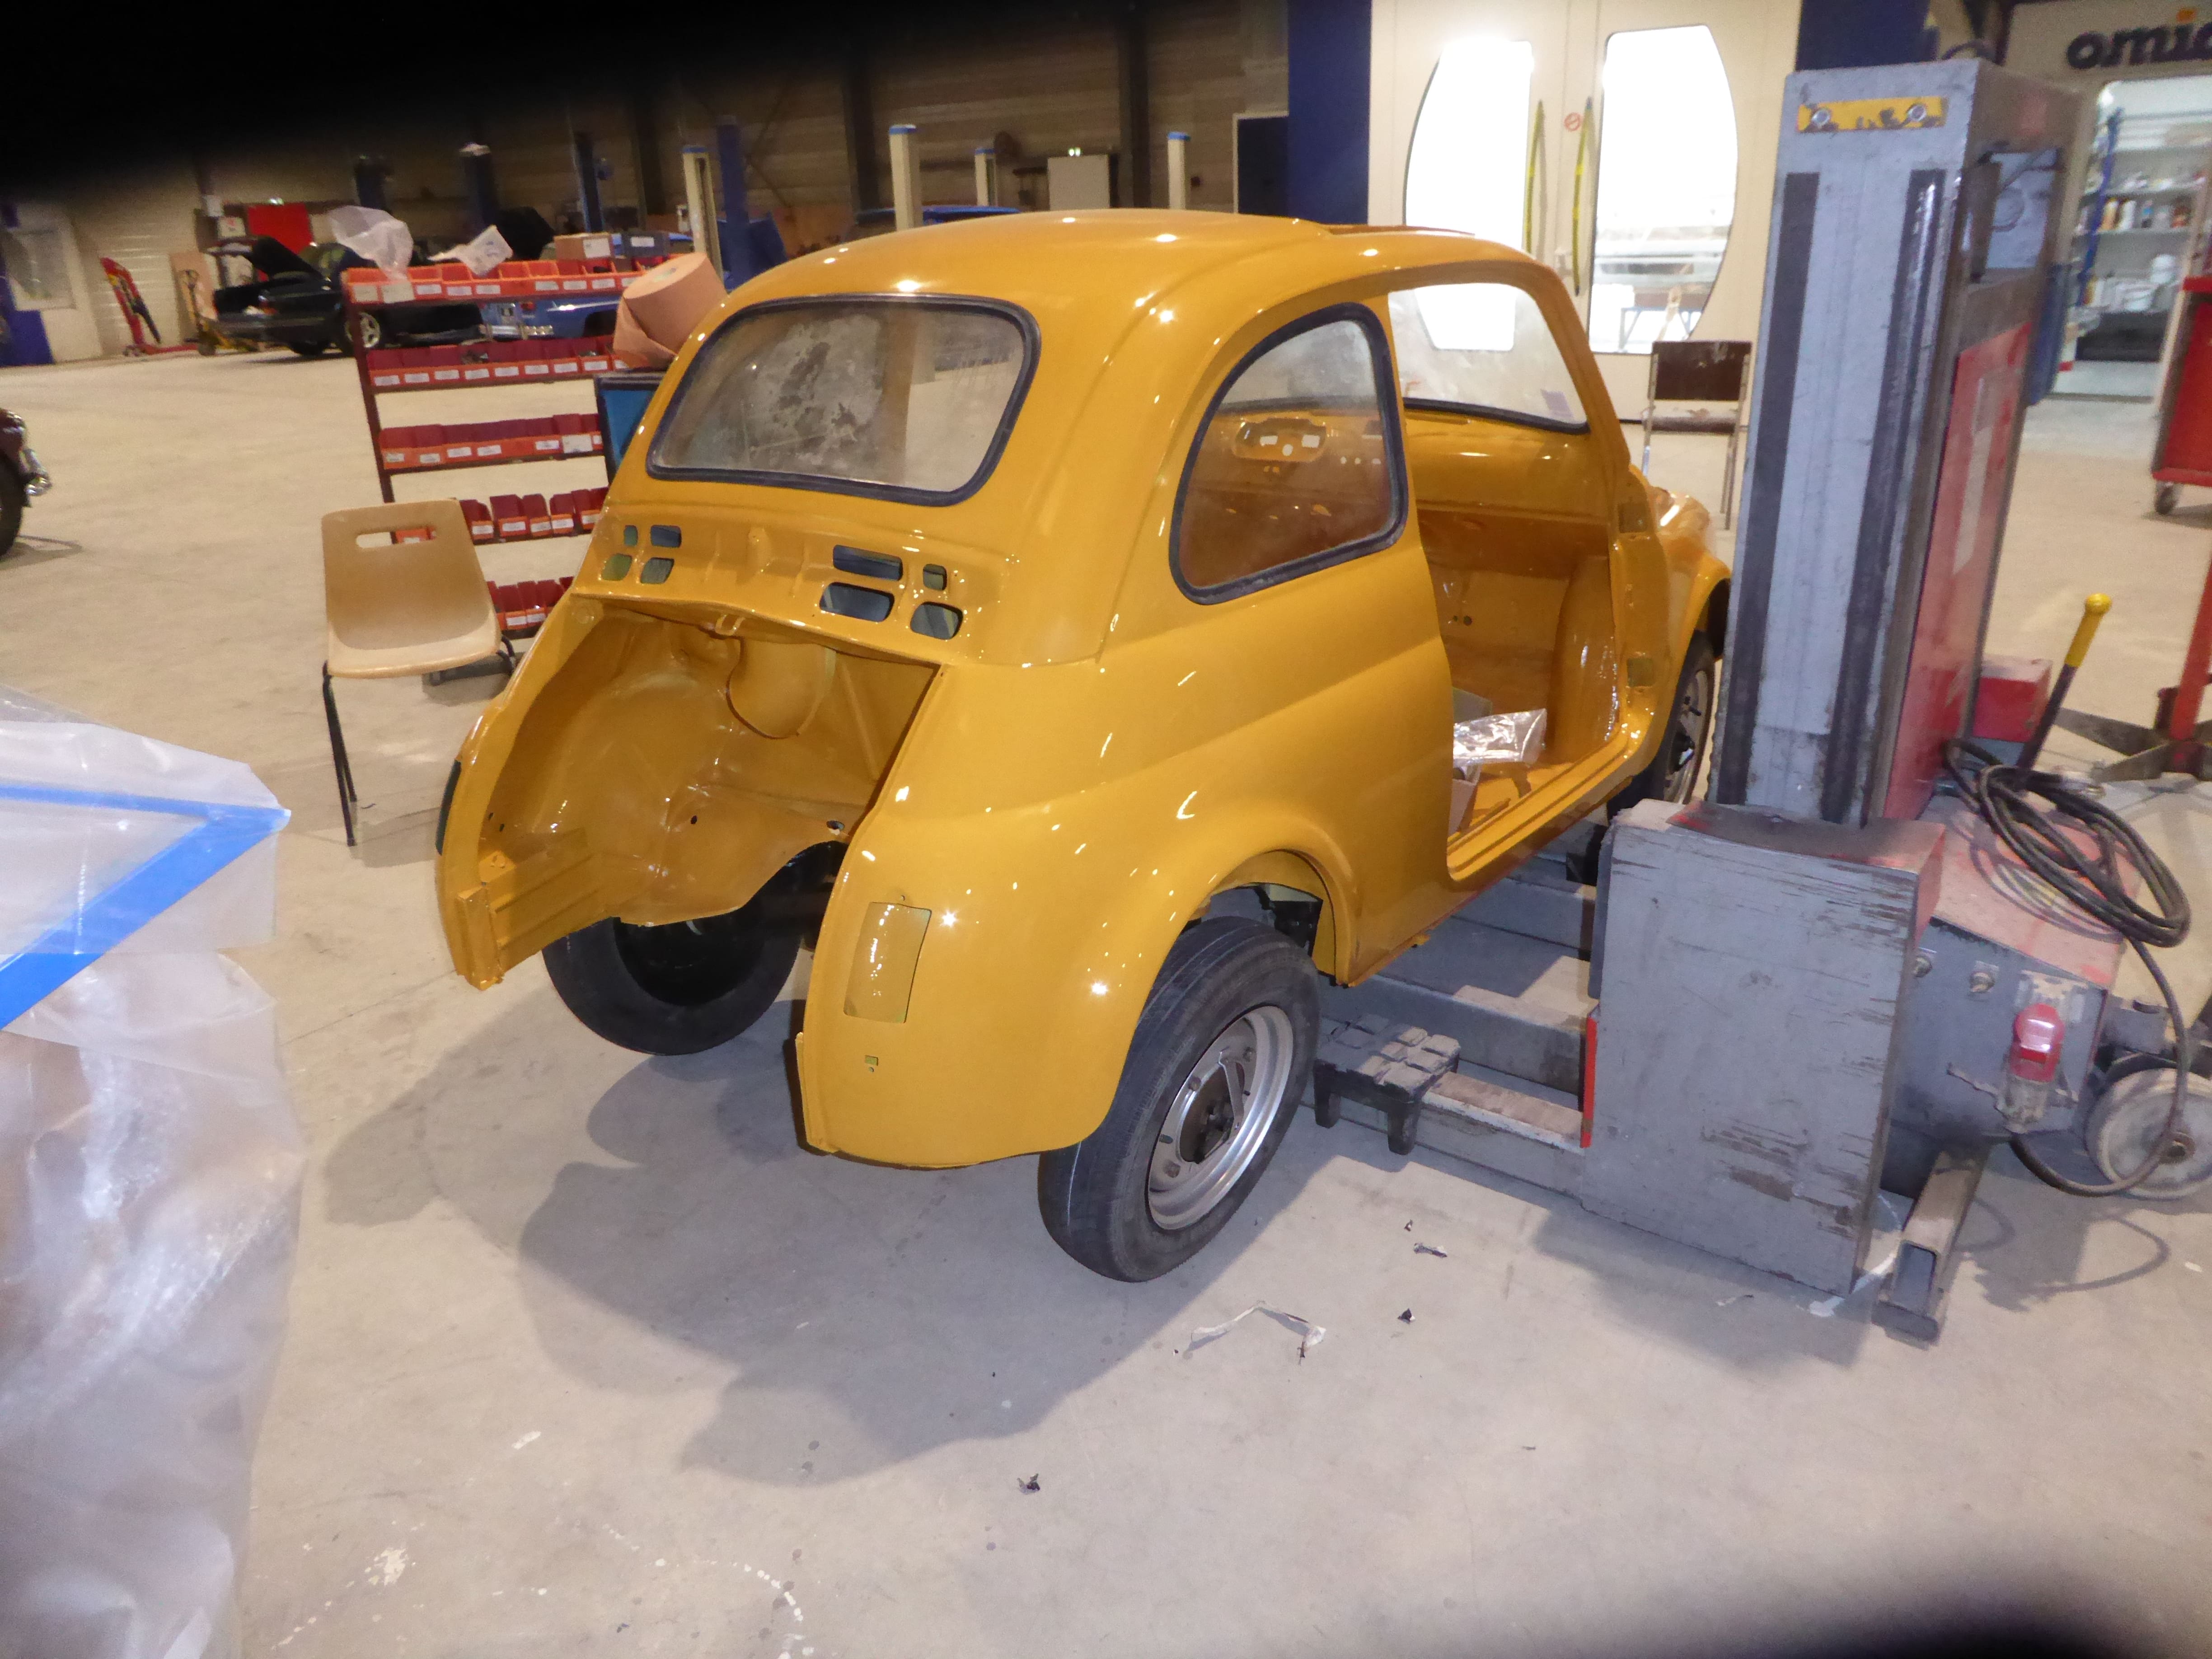 Restauration totale d'une Fiat 500 - Atelier 3V